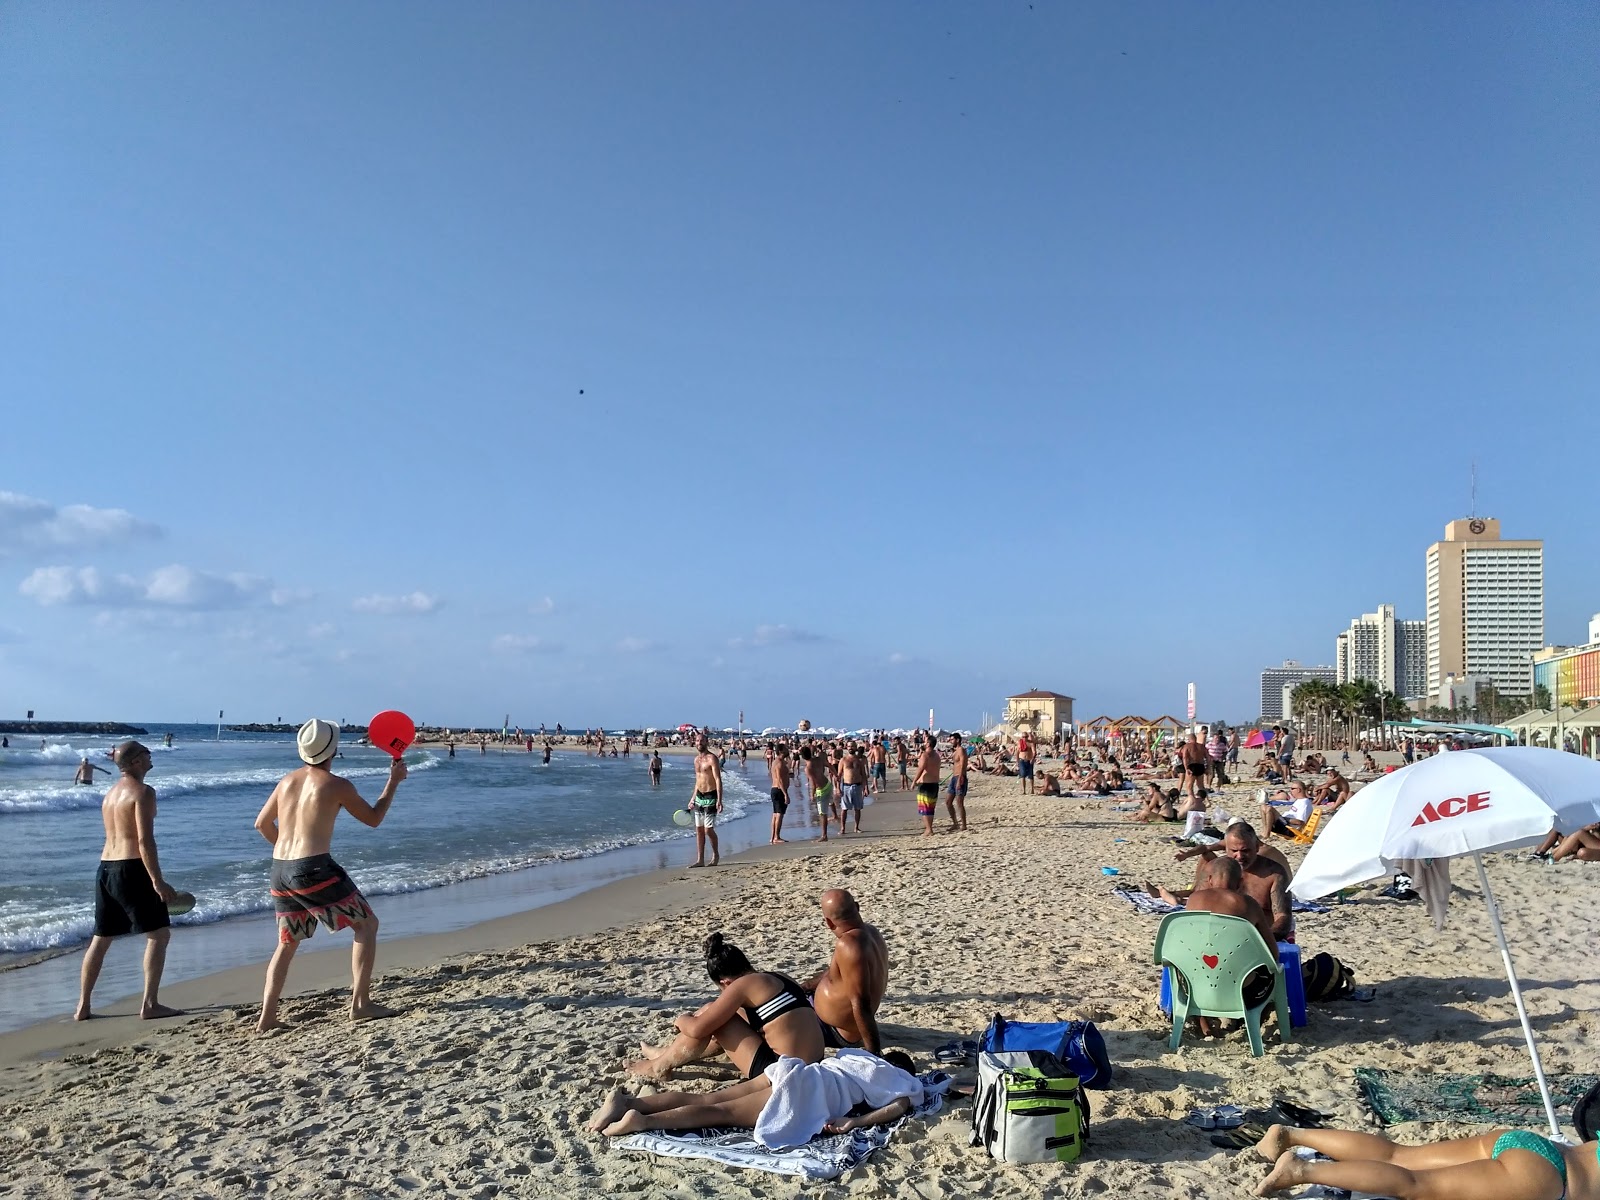 Tel Aviv beach'in fotoğrafı - Çocuklu aile gezginleri için önerilir